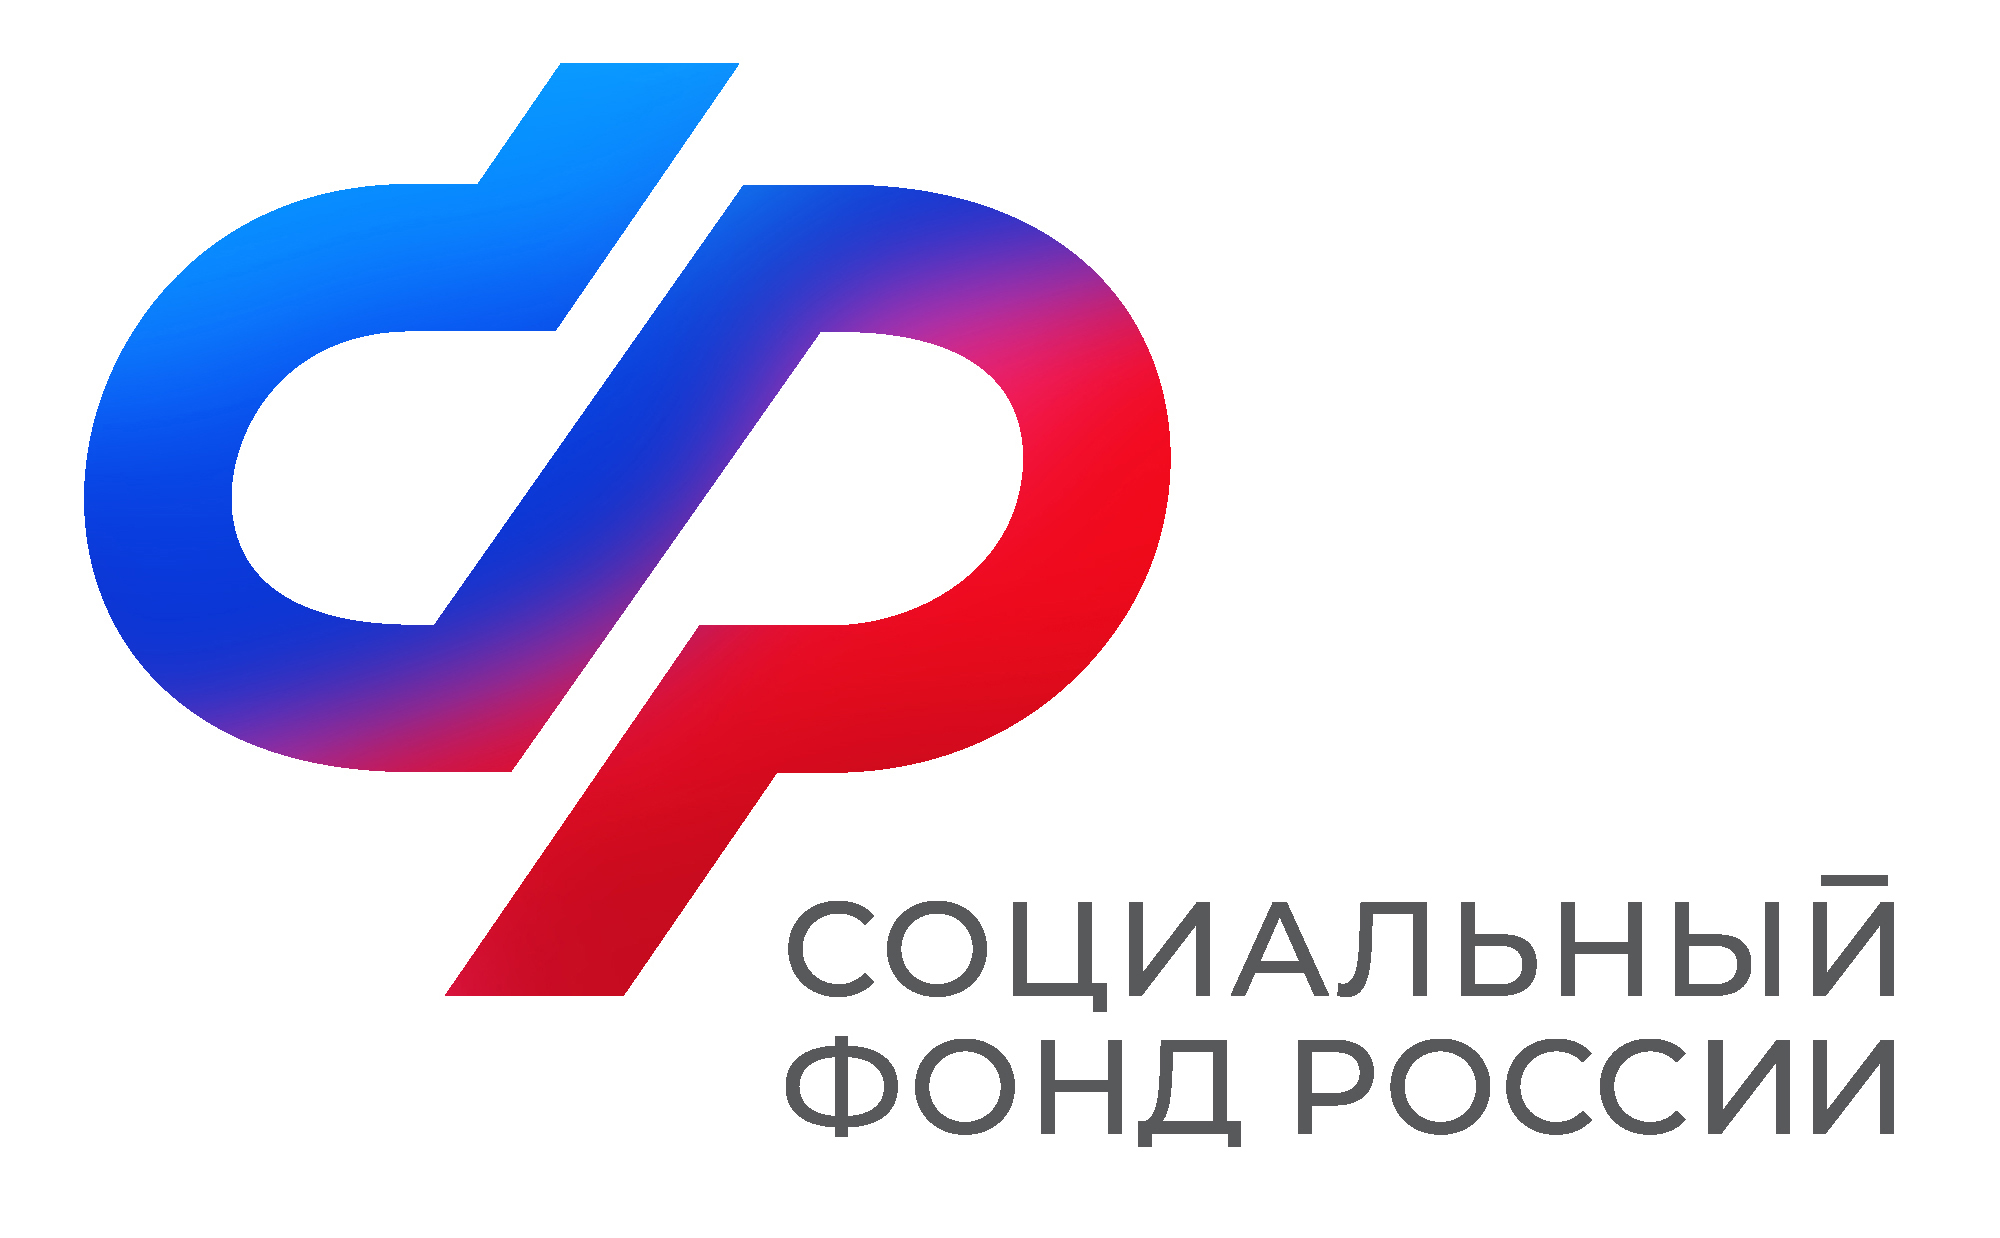 Отделение СФР по Воронежской области оплатило услуги по родовым сертификатам для 20 тысяч женщин и 11 тысяч новорожденных.